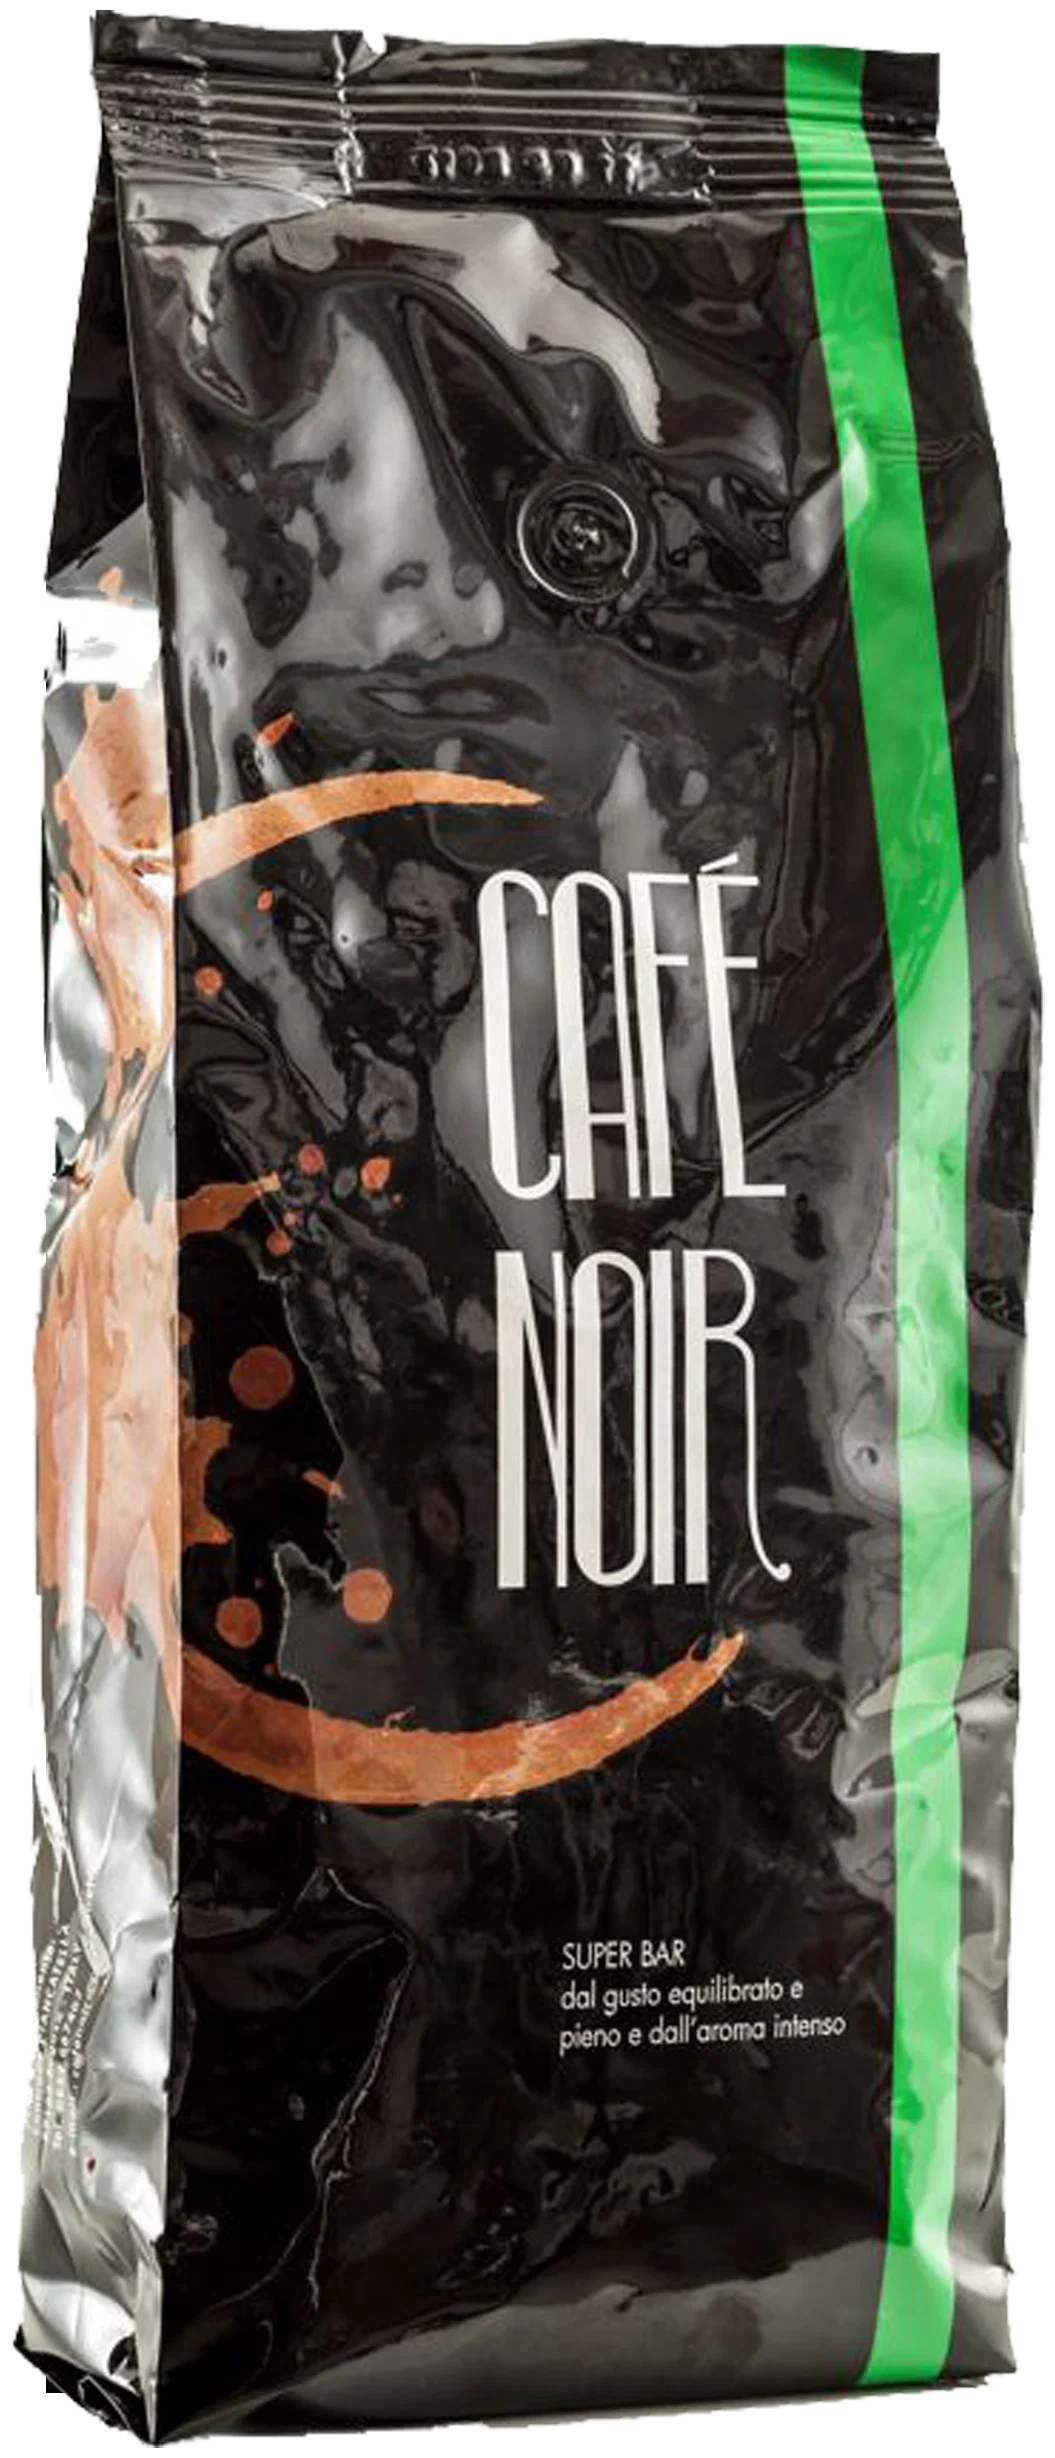 Noir кофе в зернах 1 кг